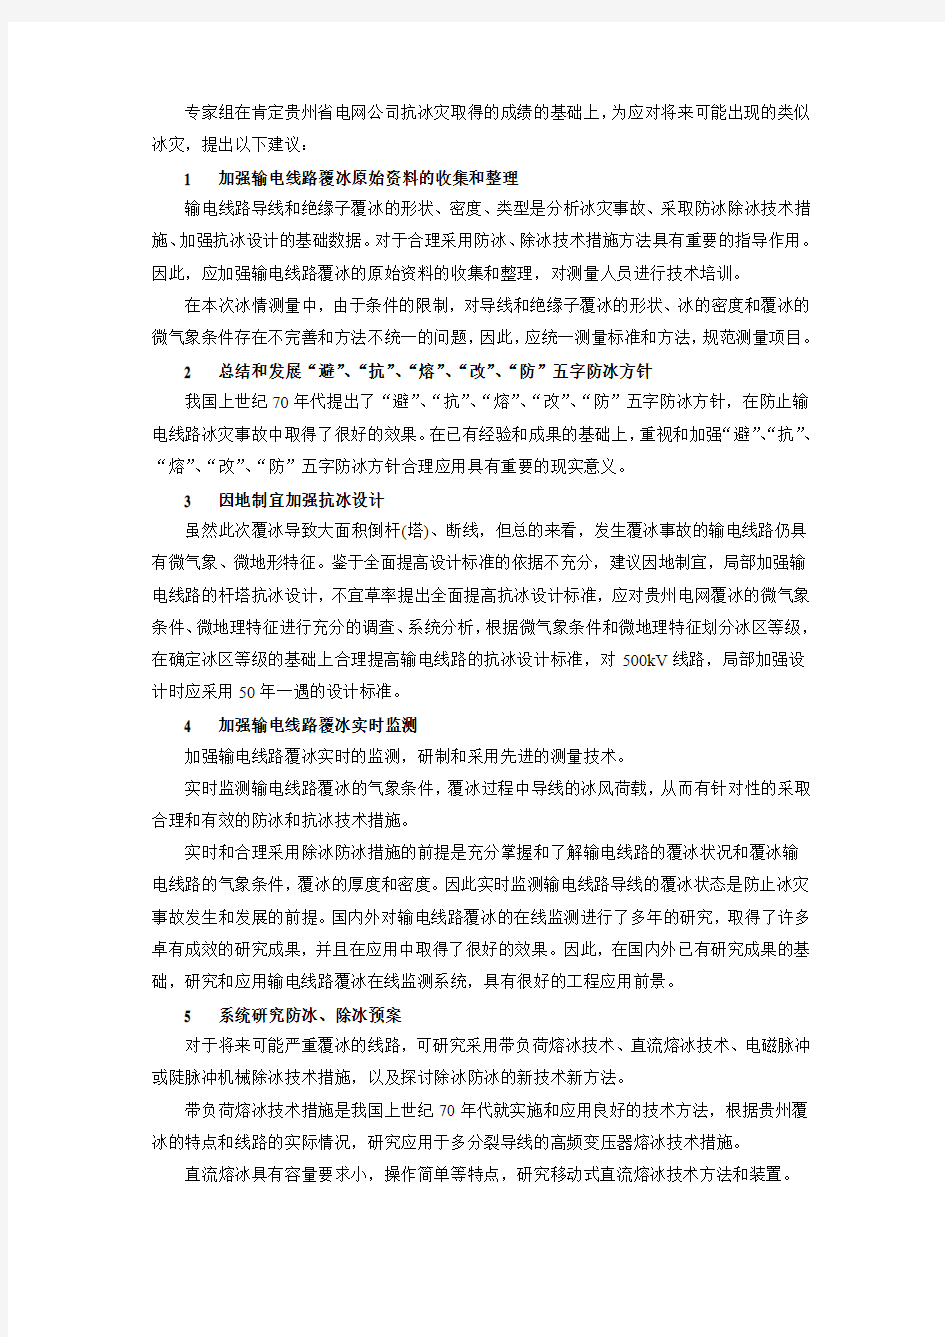 贵州电网公司冰灾事故分析及预防措施建议